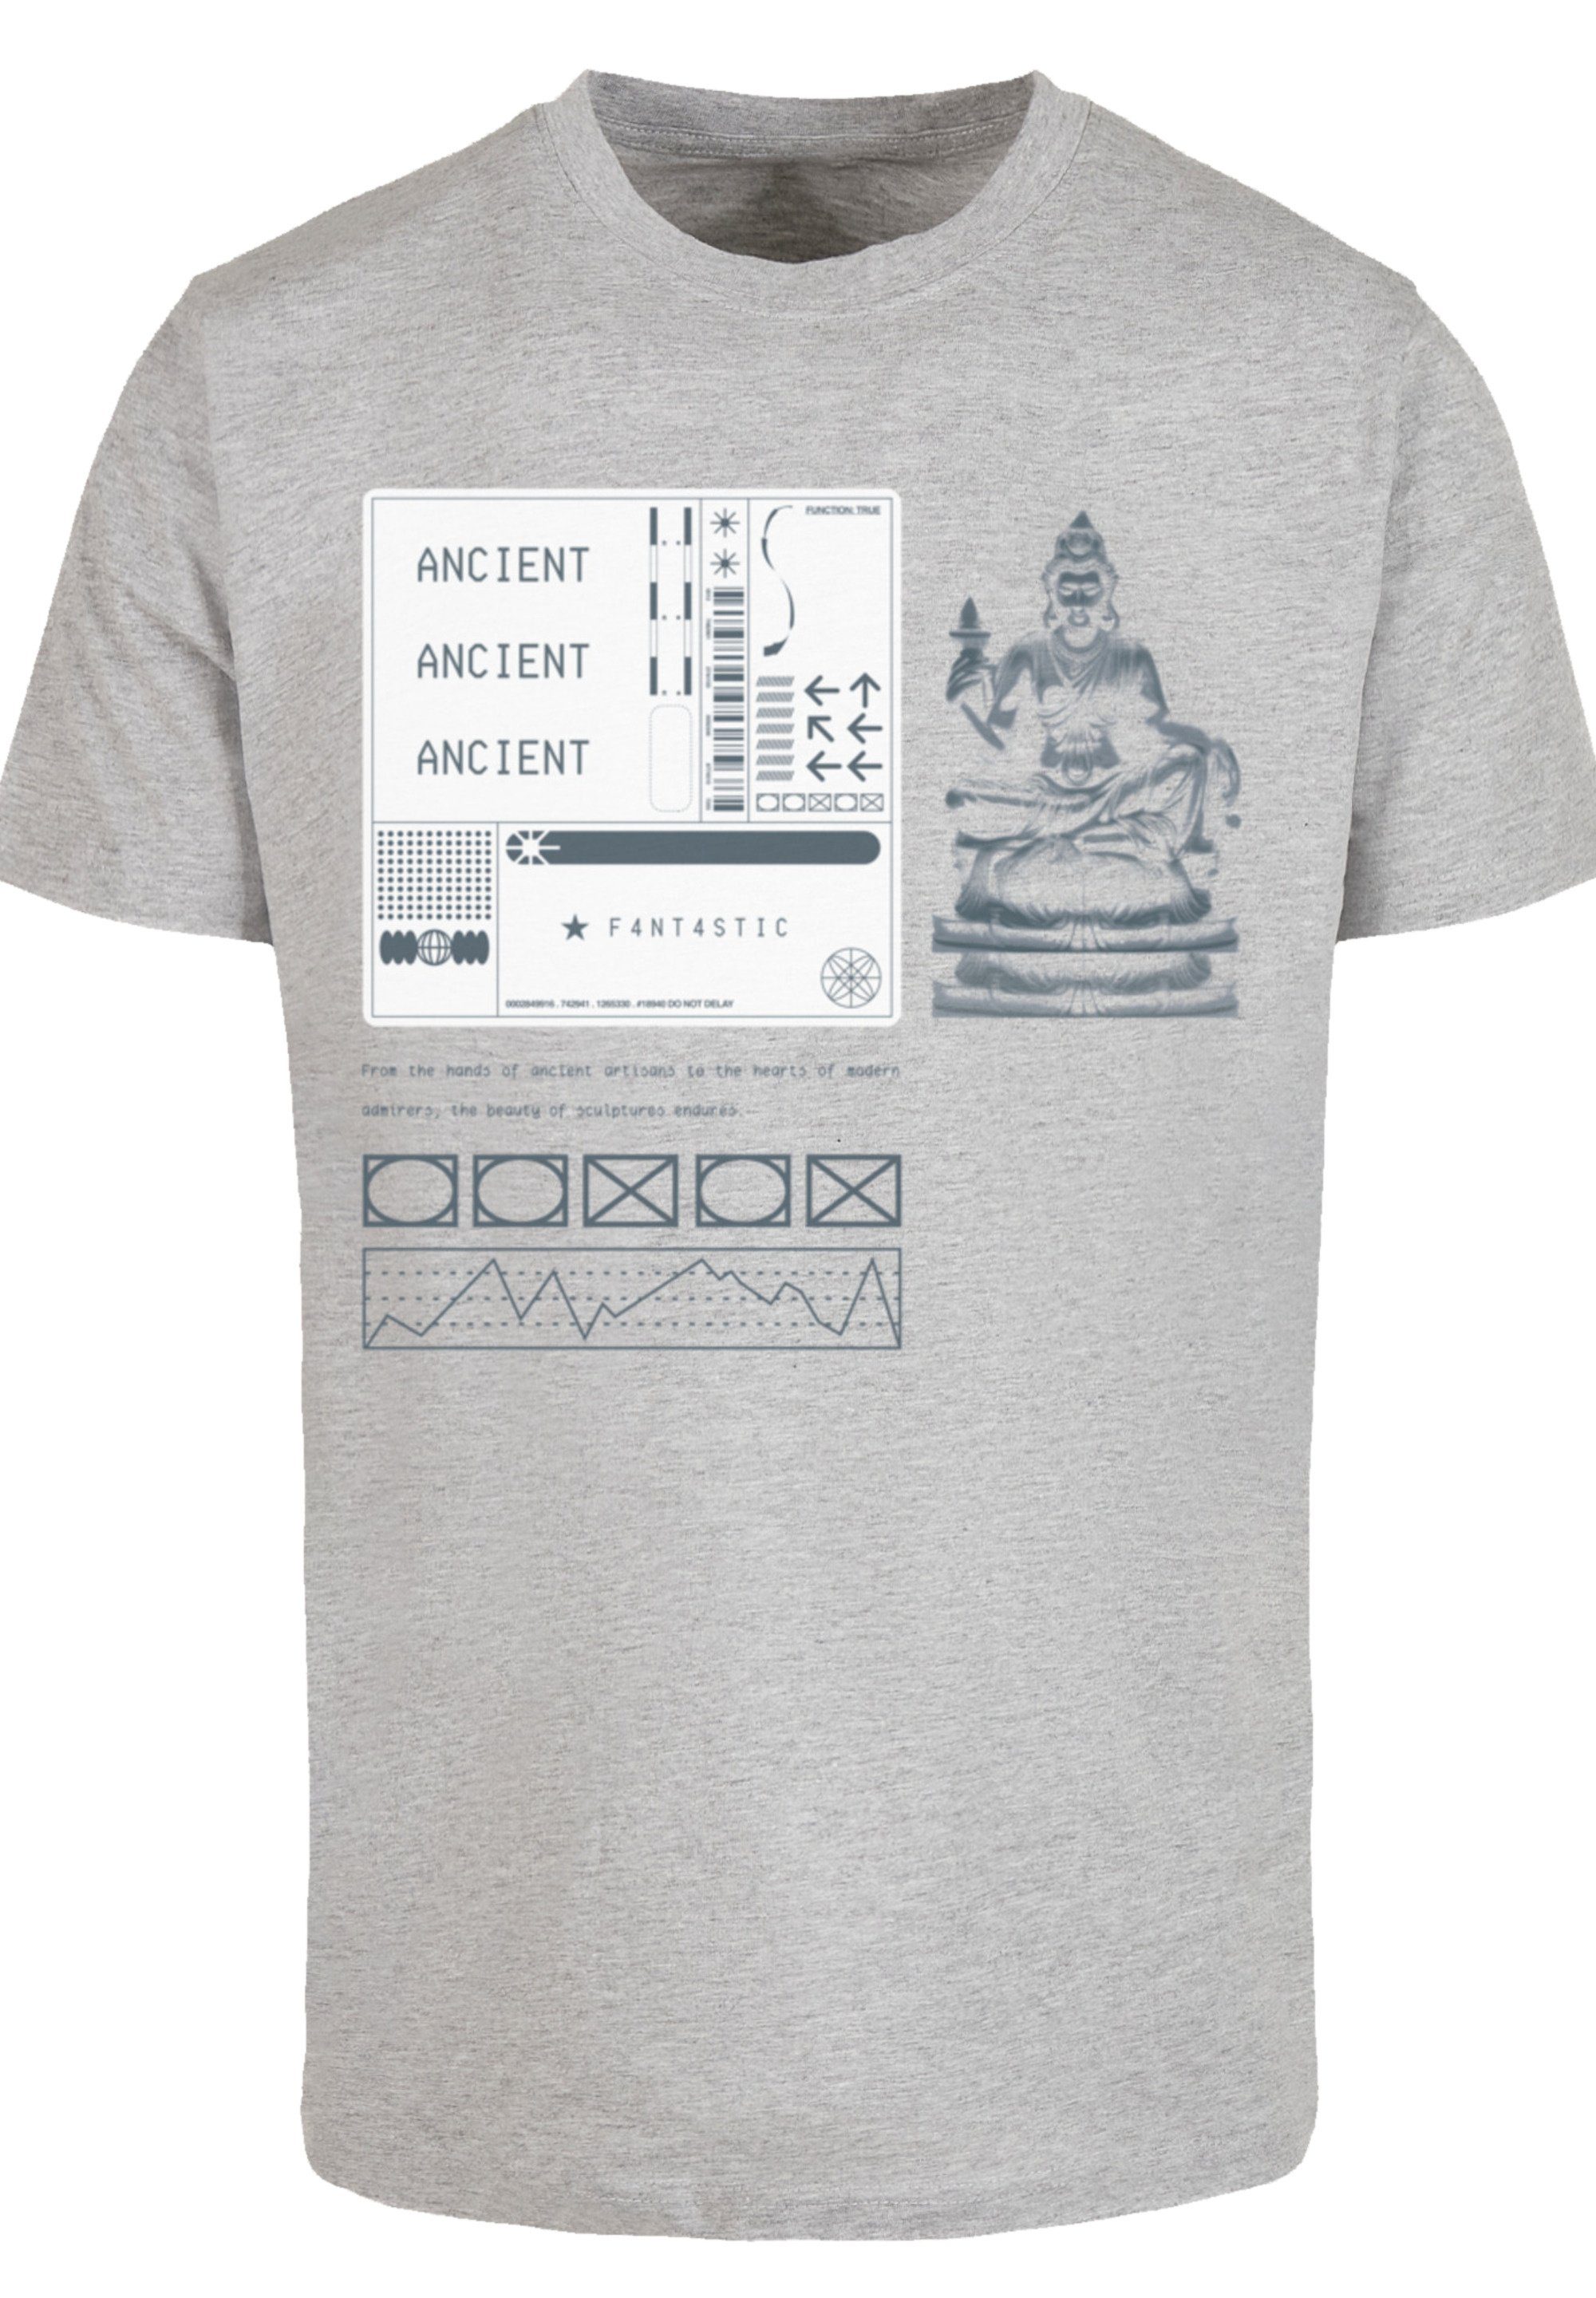 F4NT4STIC T-Shirt SCULPTURE BLAU Print heather grey | T-Shirts